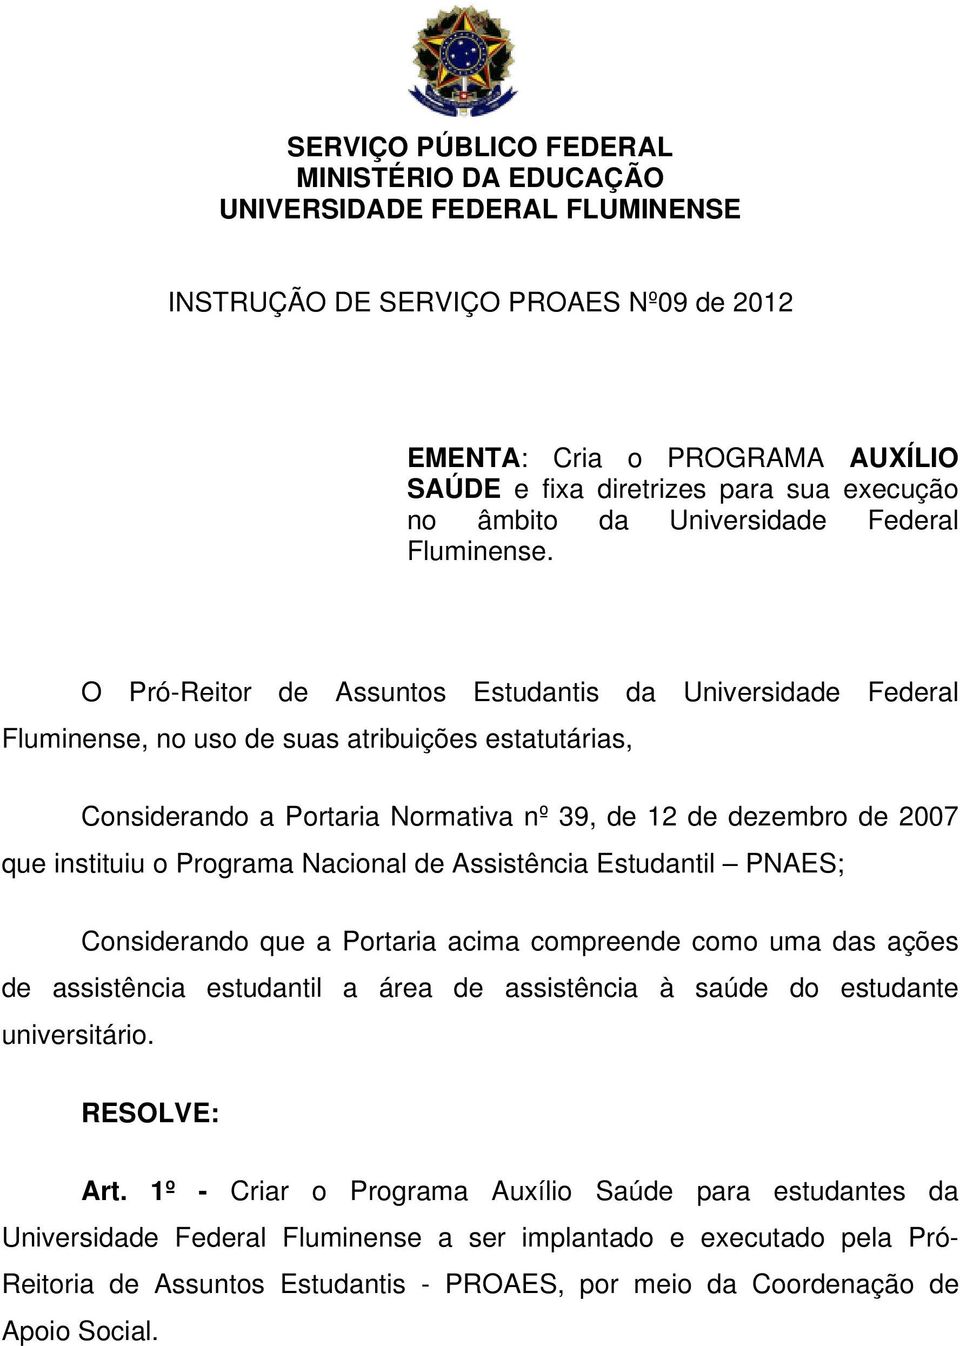 O Pró-Reitor de Assuntos Estudantis da Universidade Federal Fluminense, no uso de suas atribuições estatutárias, Considerando a Portaria Normativa nº 39, de 12 de dezembro de 2007 que instituiu o